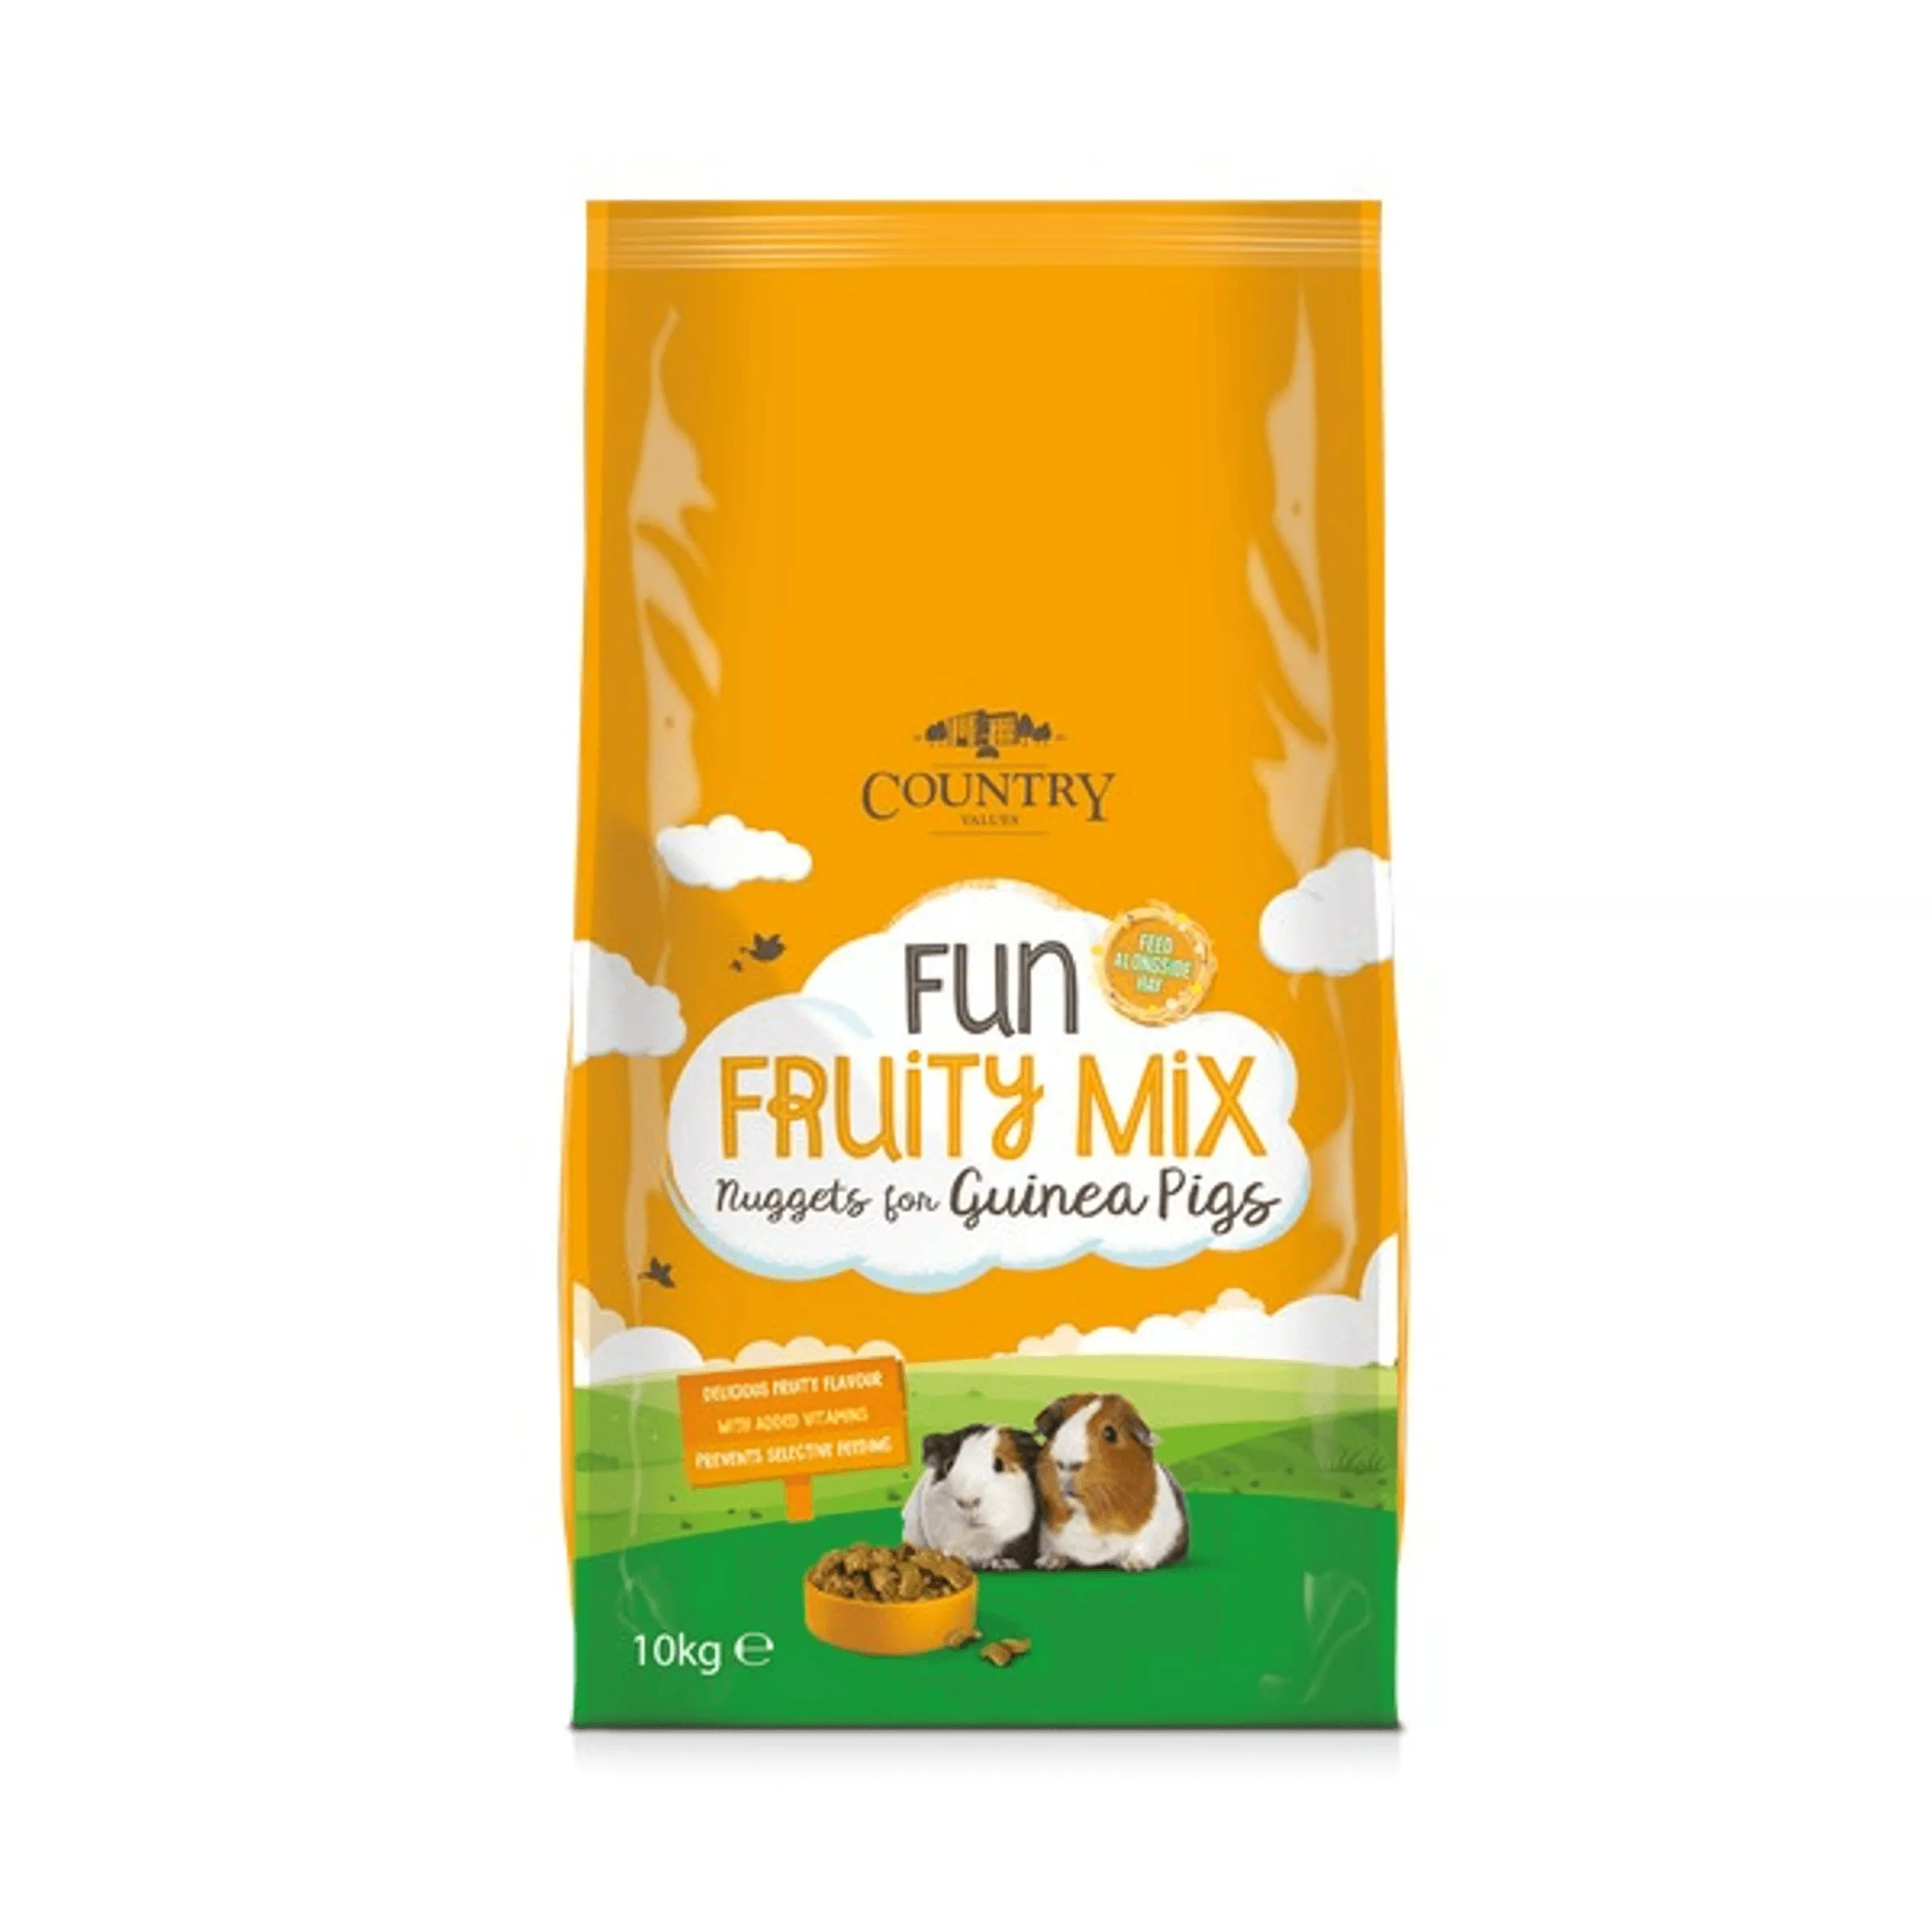 Fun Fruity Mix Guinea Pigs 10k